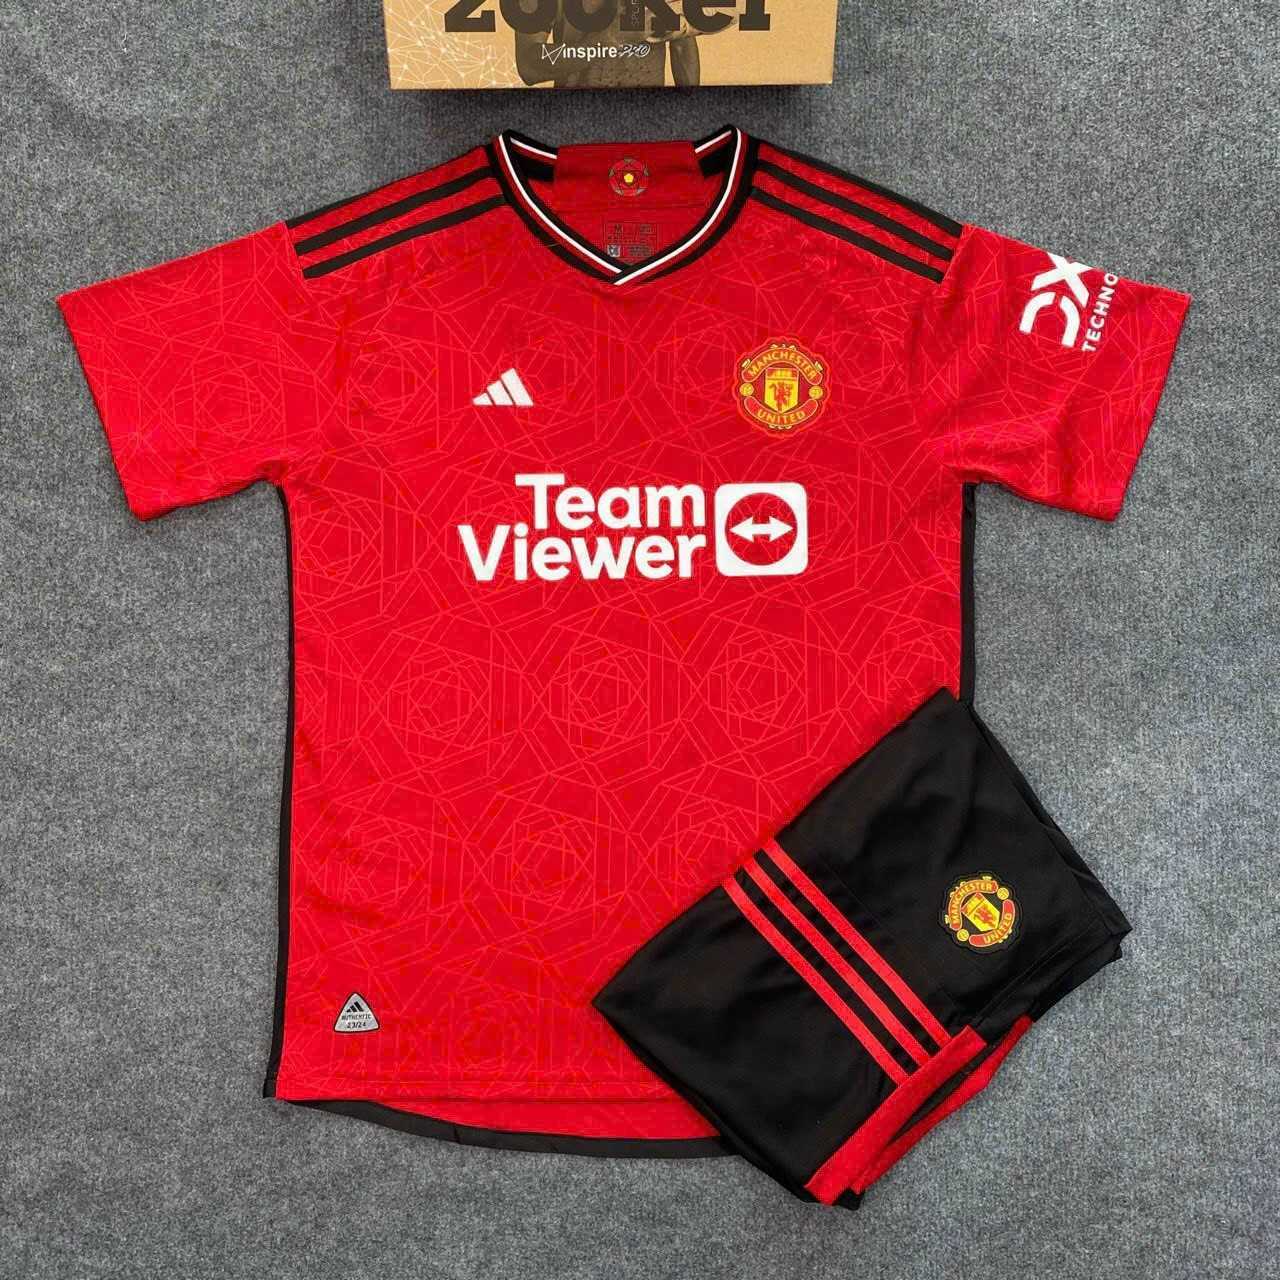 Bản đẹp - bộ quần áo đá bóng clb MU Manchester United jersey cổ tròn mùa 23 24 màu đỏ năm 2023 2024 Teamviewer 2 dòng quần đen